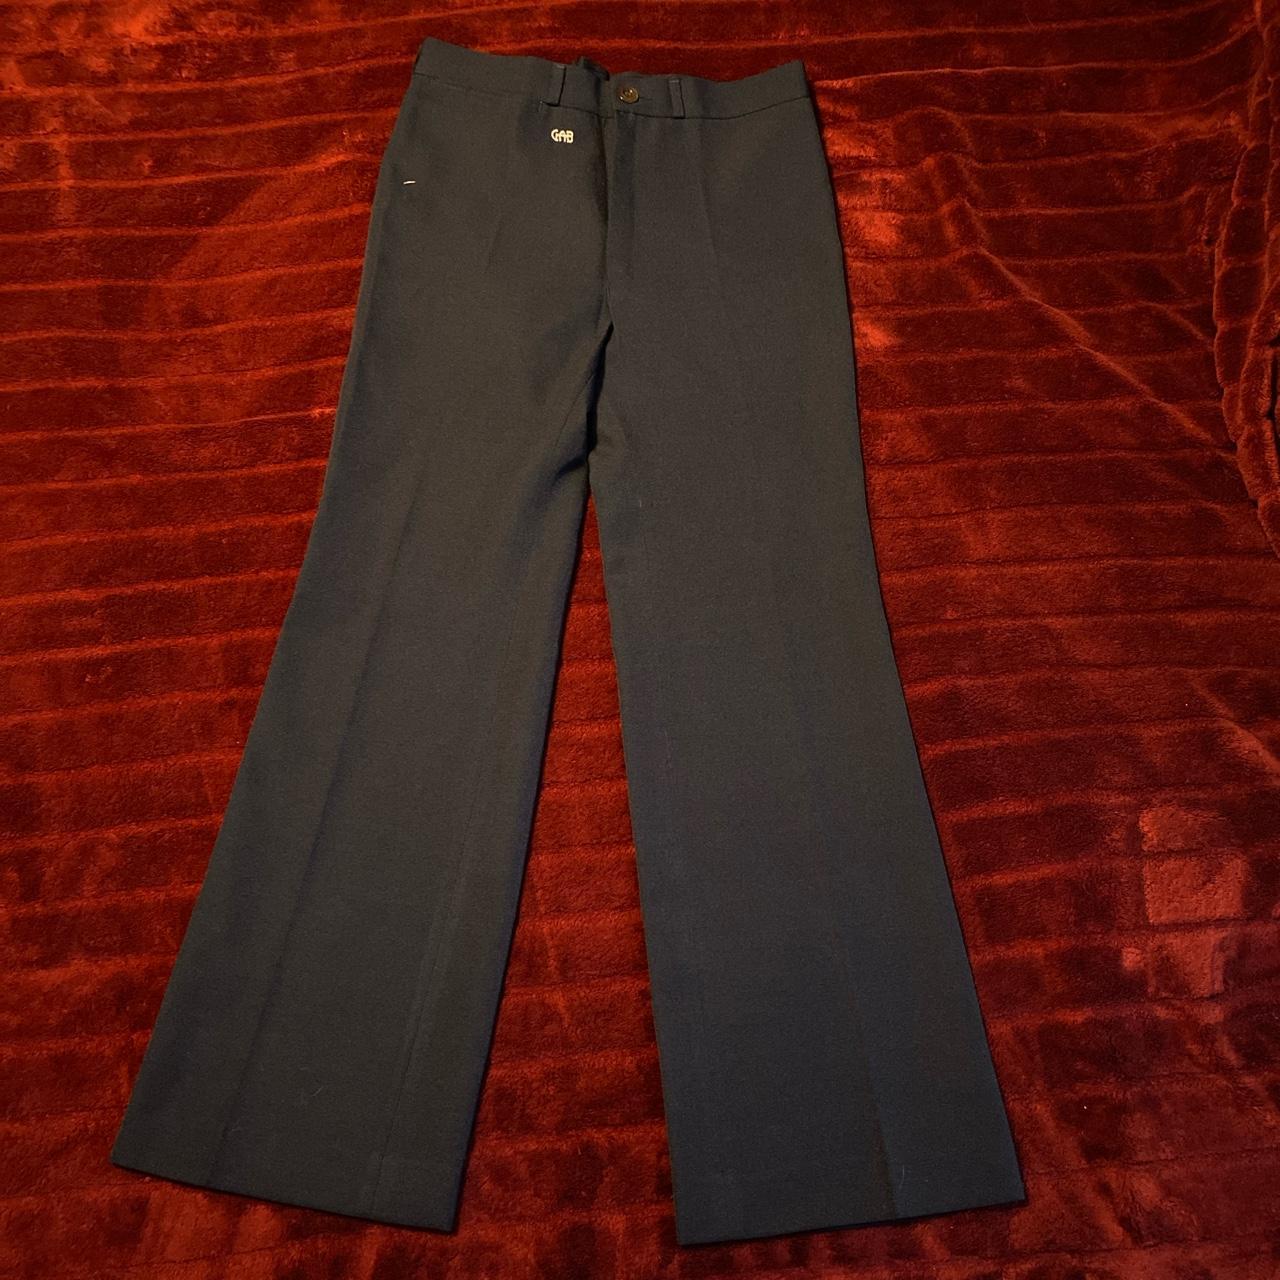 Vintage 1970s polyester pants - Gem